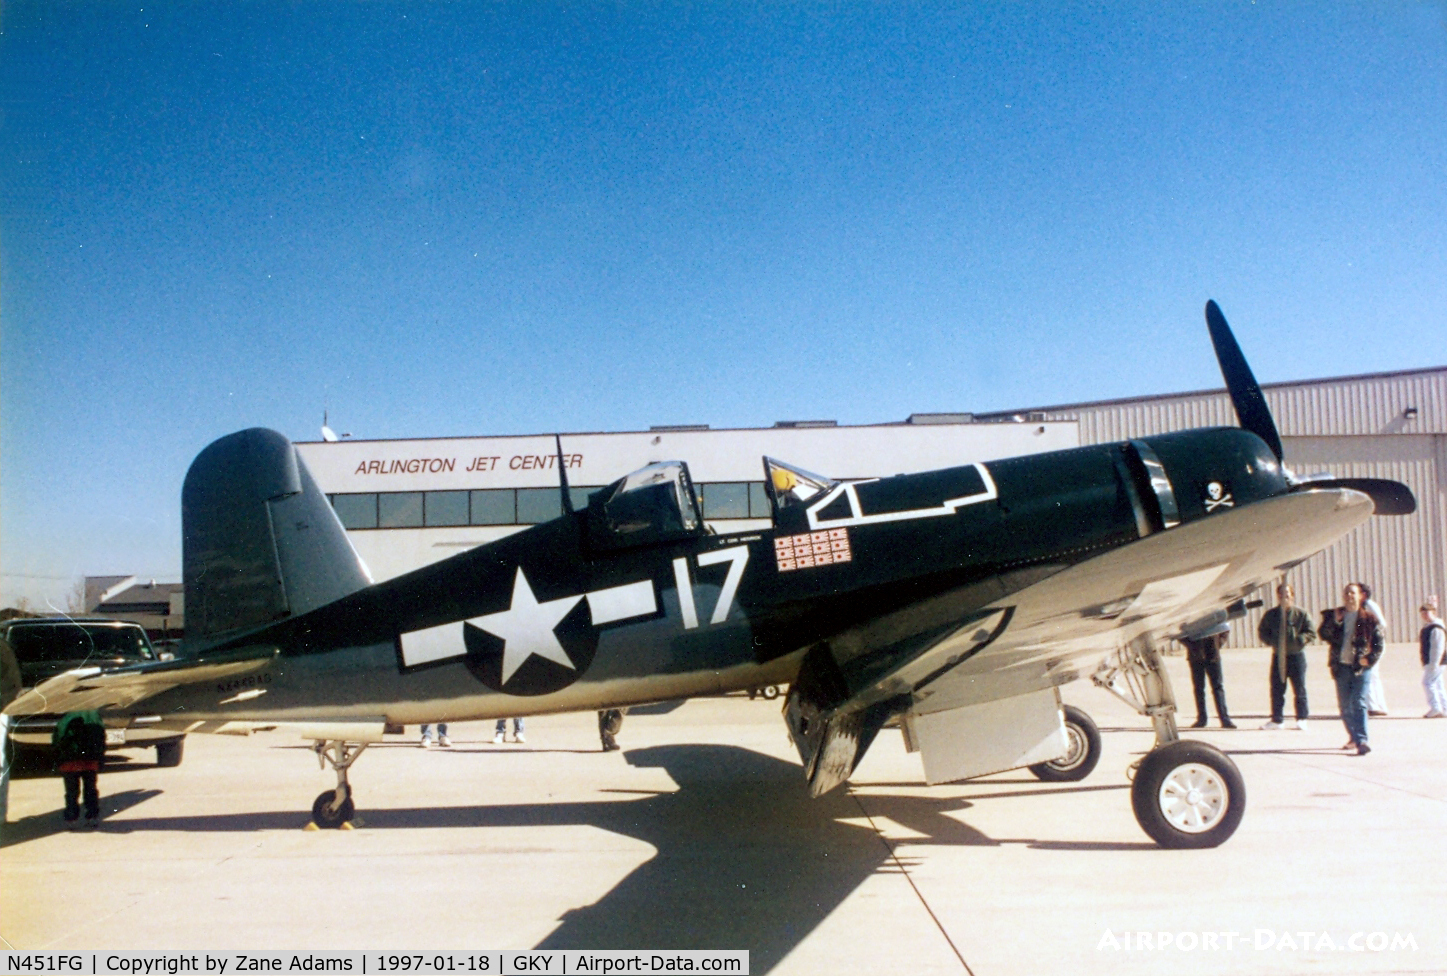 N451FG, 1945 Goodyear FG-1D Corsair C/N 3660, Corsair at Arlington, TX